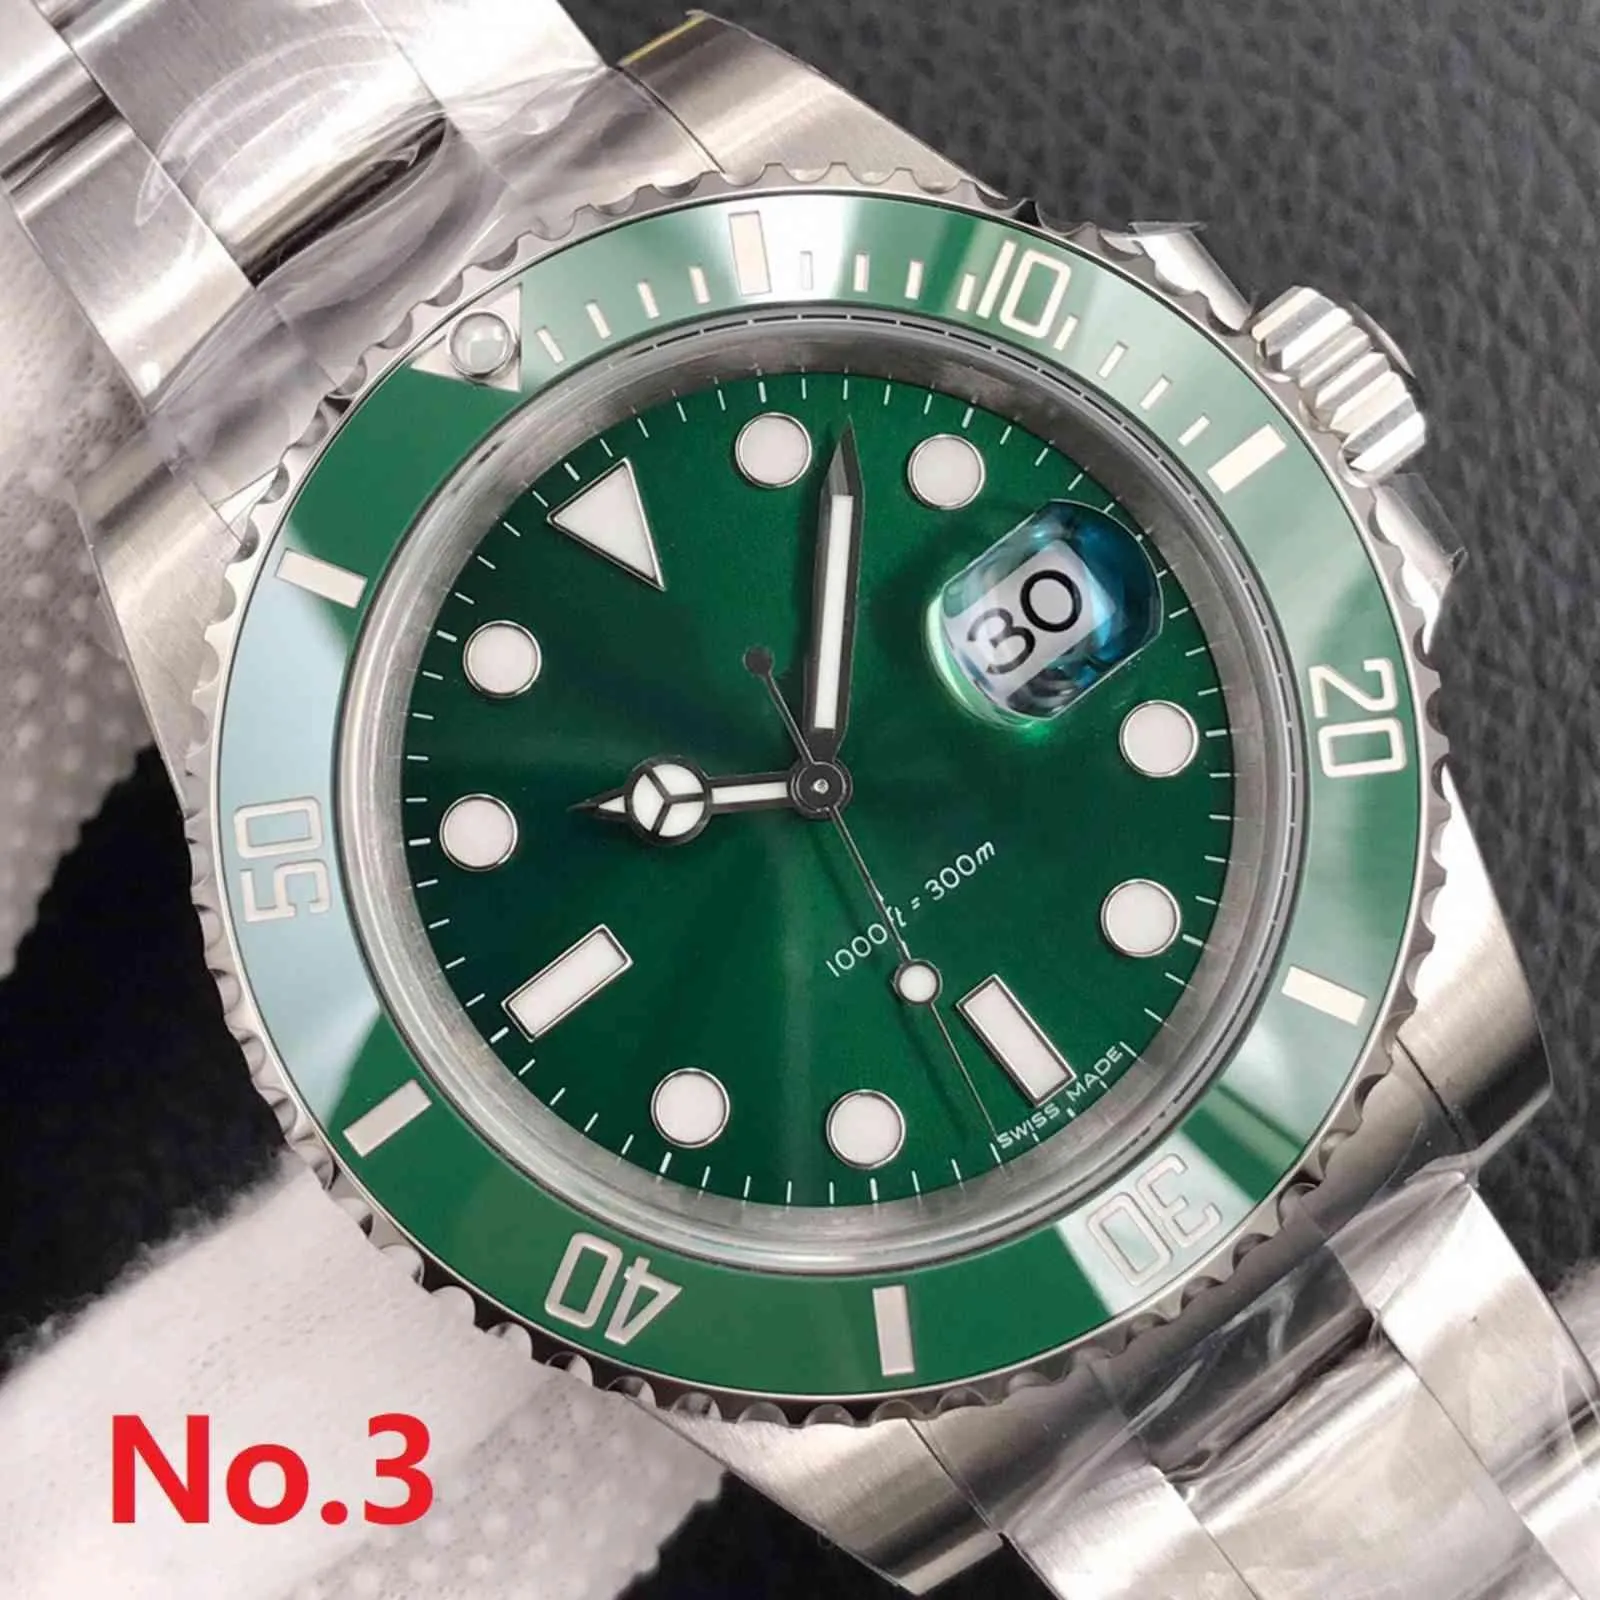 Aaaaa qualidade superior famosa marca automática auto vento 40mm relógios masculinos cristal safira com caixa verde original r1 # 242c